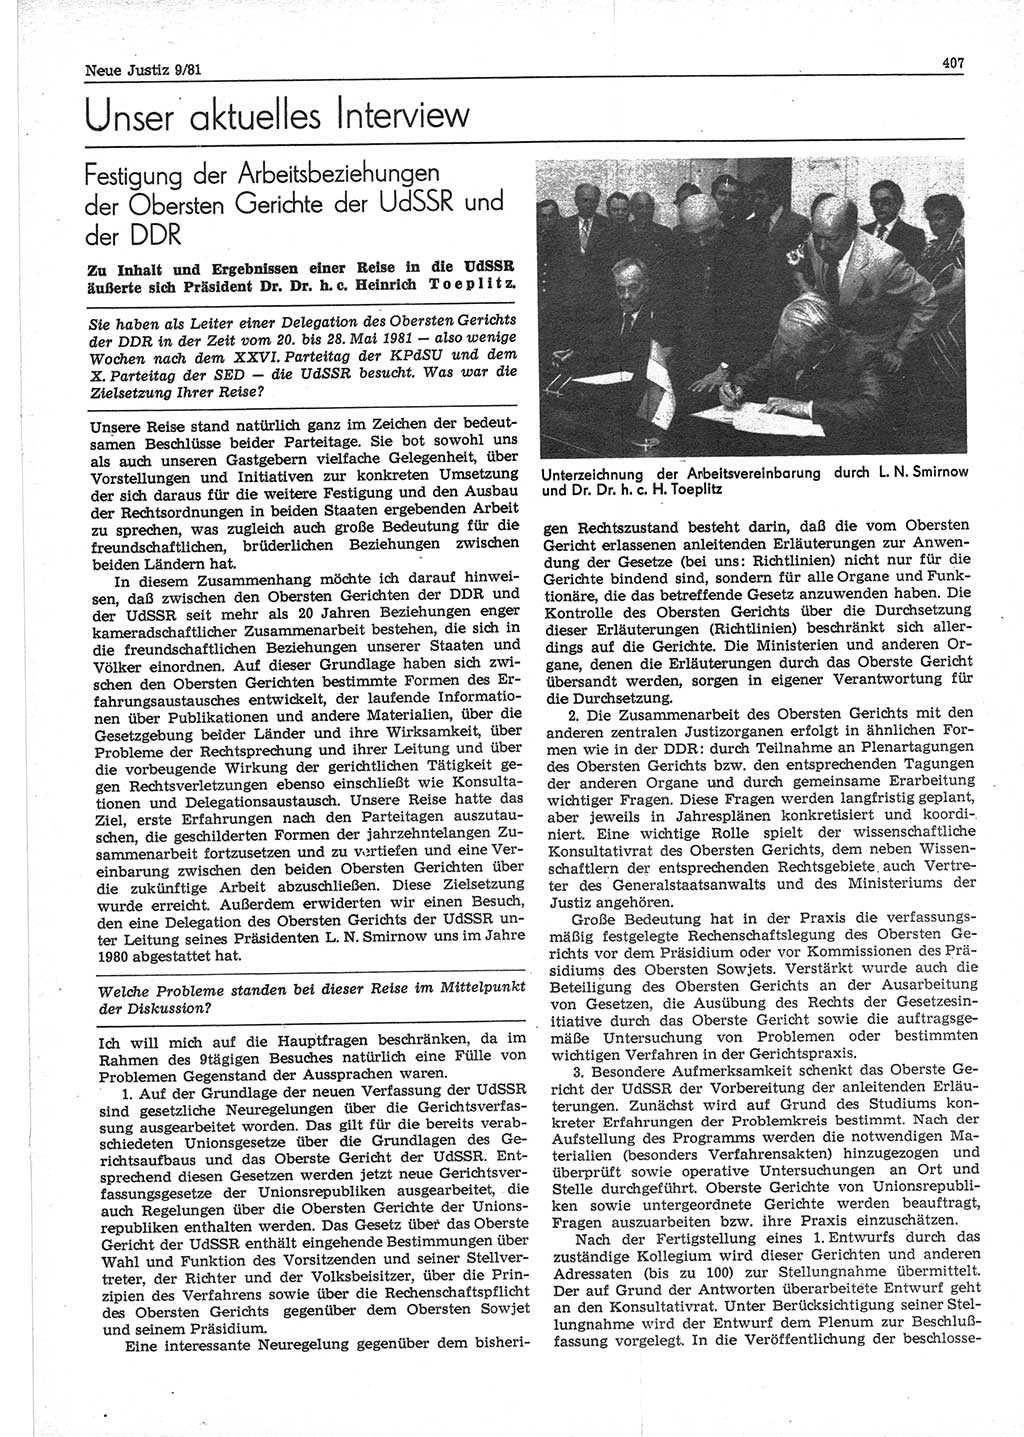 Neue Justiz (NJ), Zeitschrift für sozialistisches Recht und Gesetzlichkeit [Deutsche Demokratische Republik (DDR)], 35. Jahrgang 1981, Seite 407 (NJ DDR 1981, S. 407)